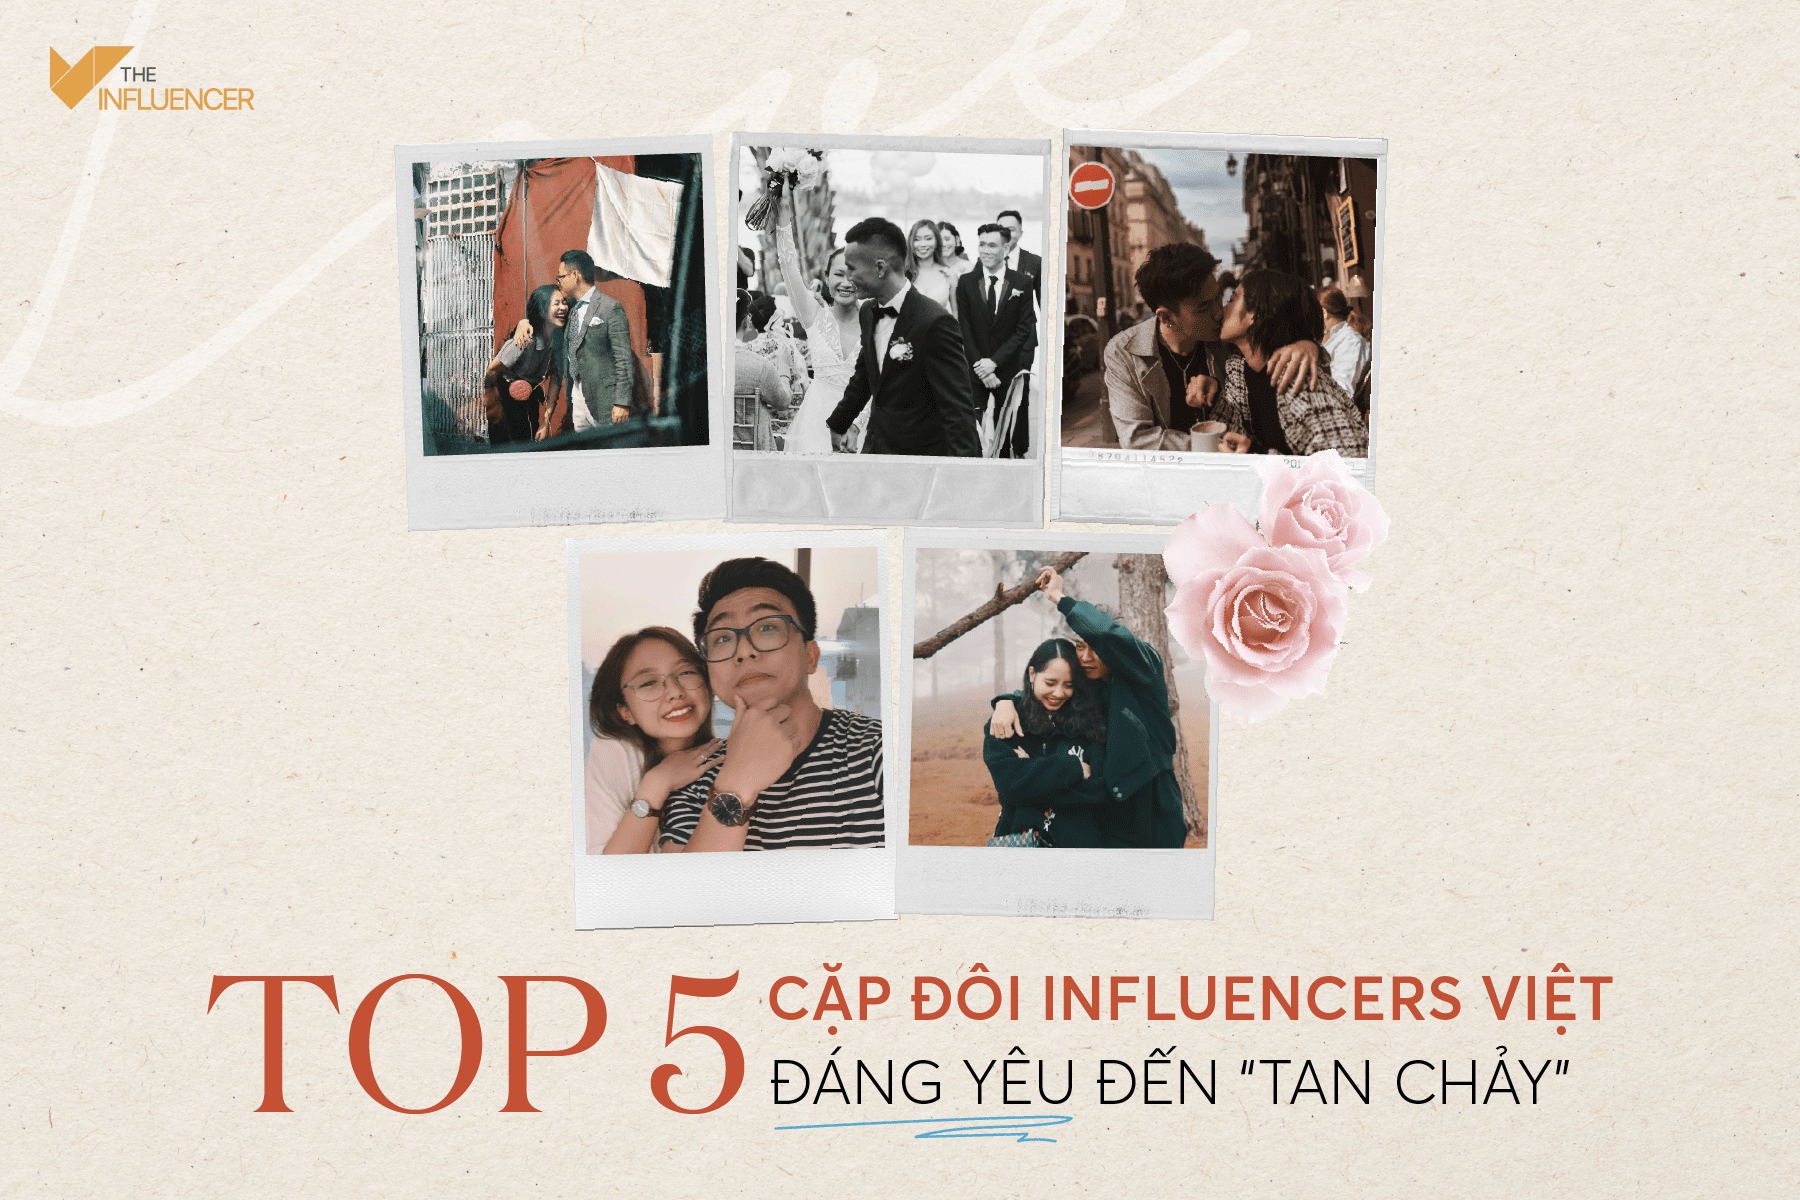 #TopList: Top 5 cặp đôi influencers Việt đáng yêu đến “tan chảy”